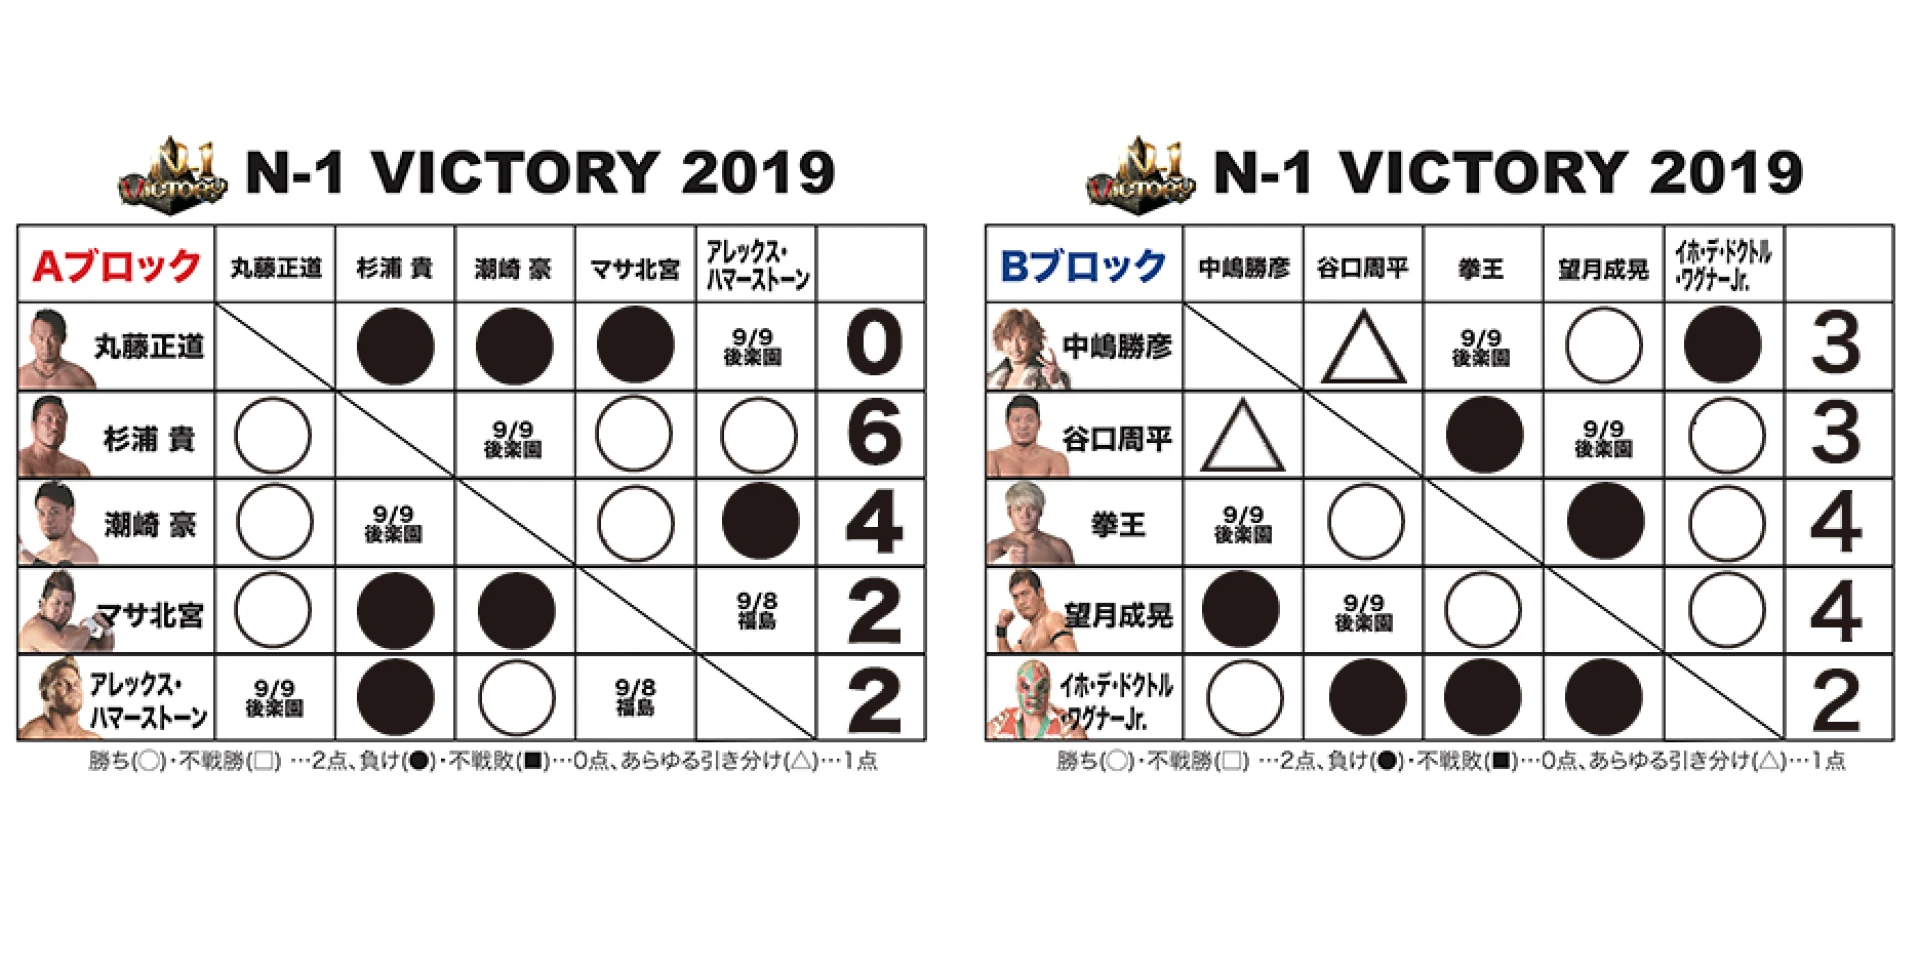 【9.7横浜大会終了時の得点状況】『N-1 VICTORY 2019』得点表